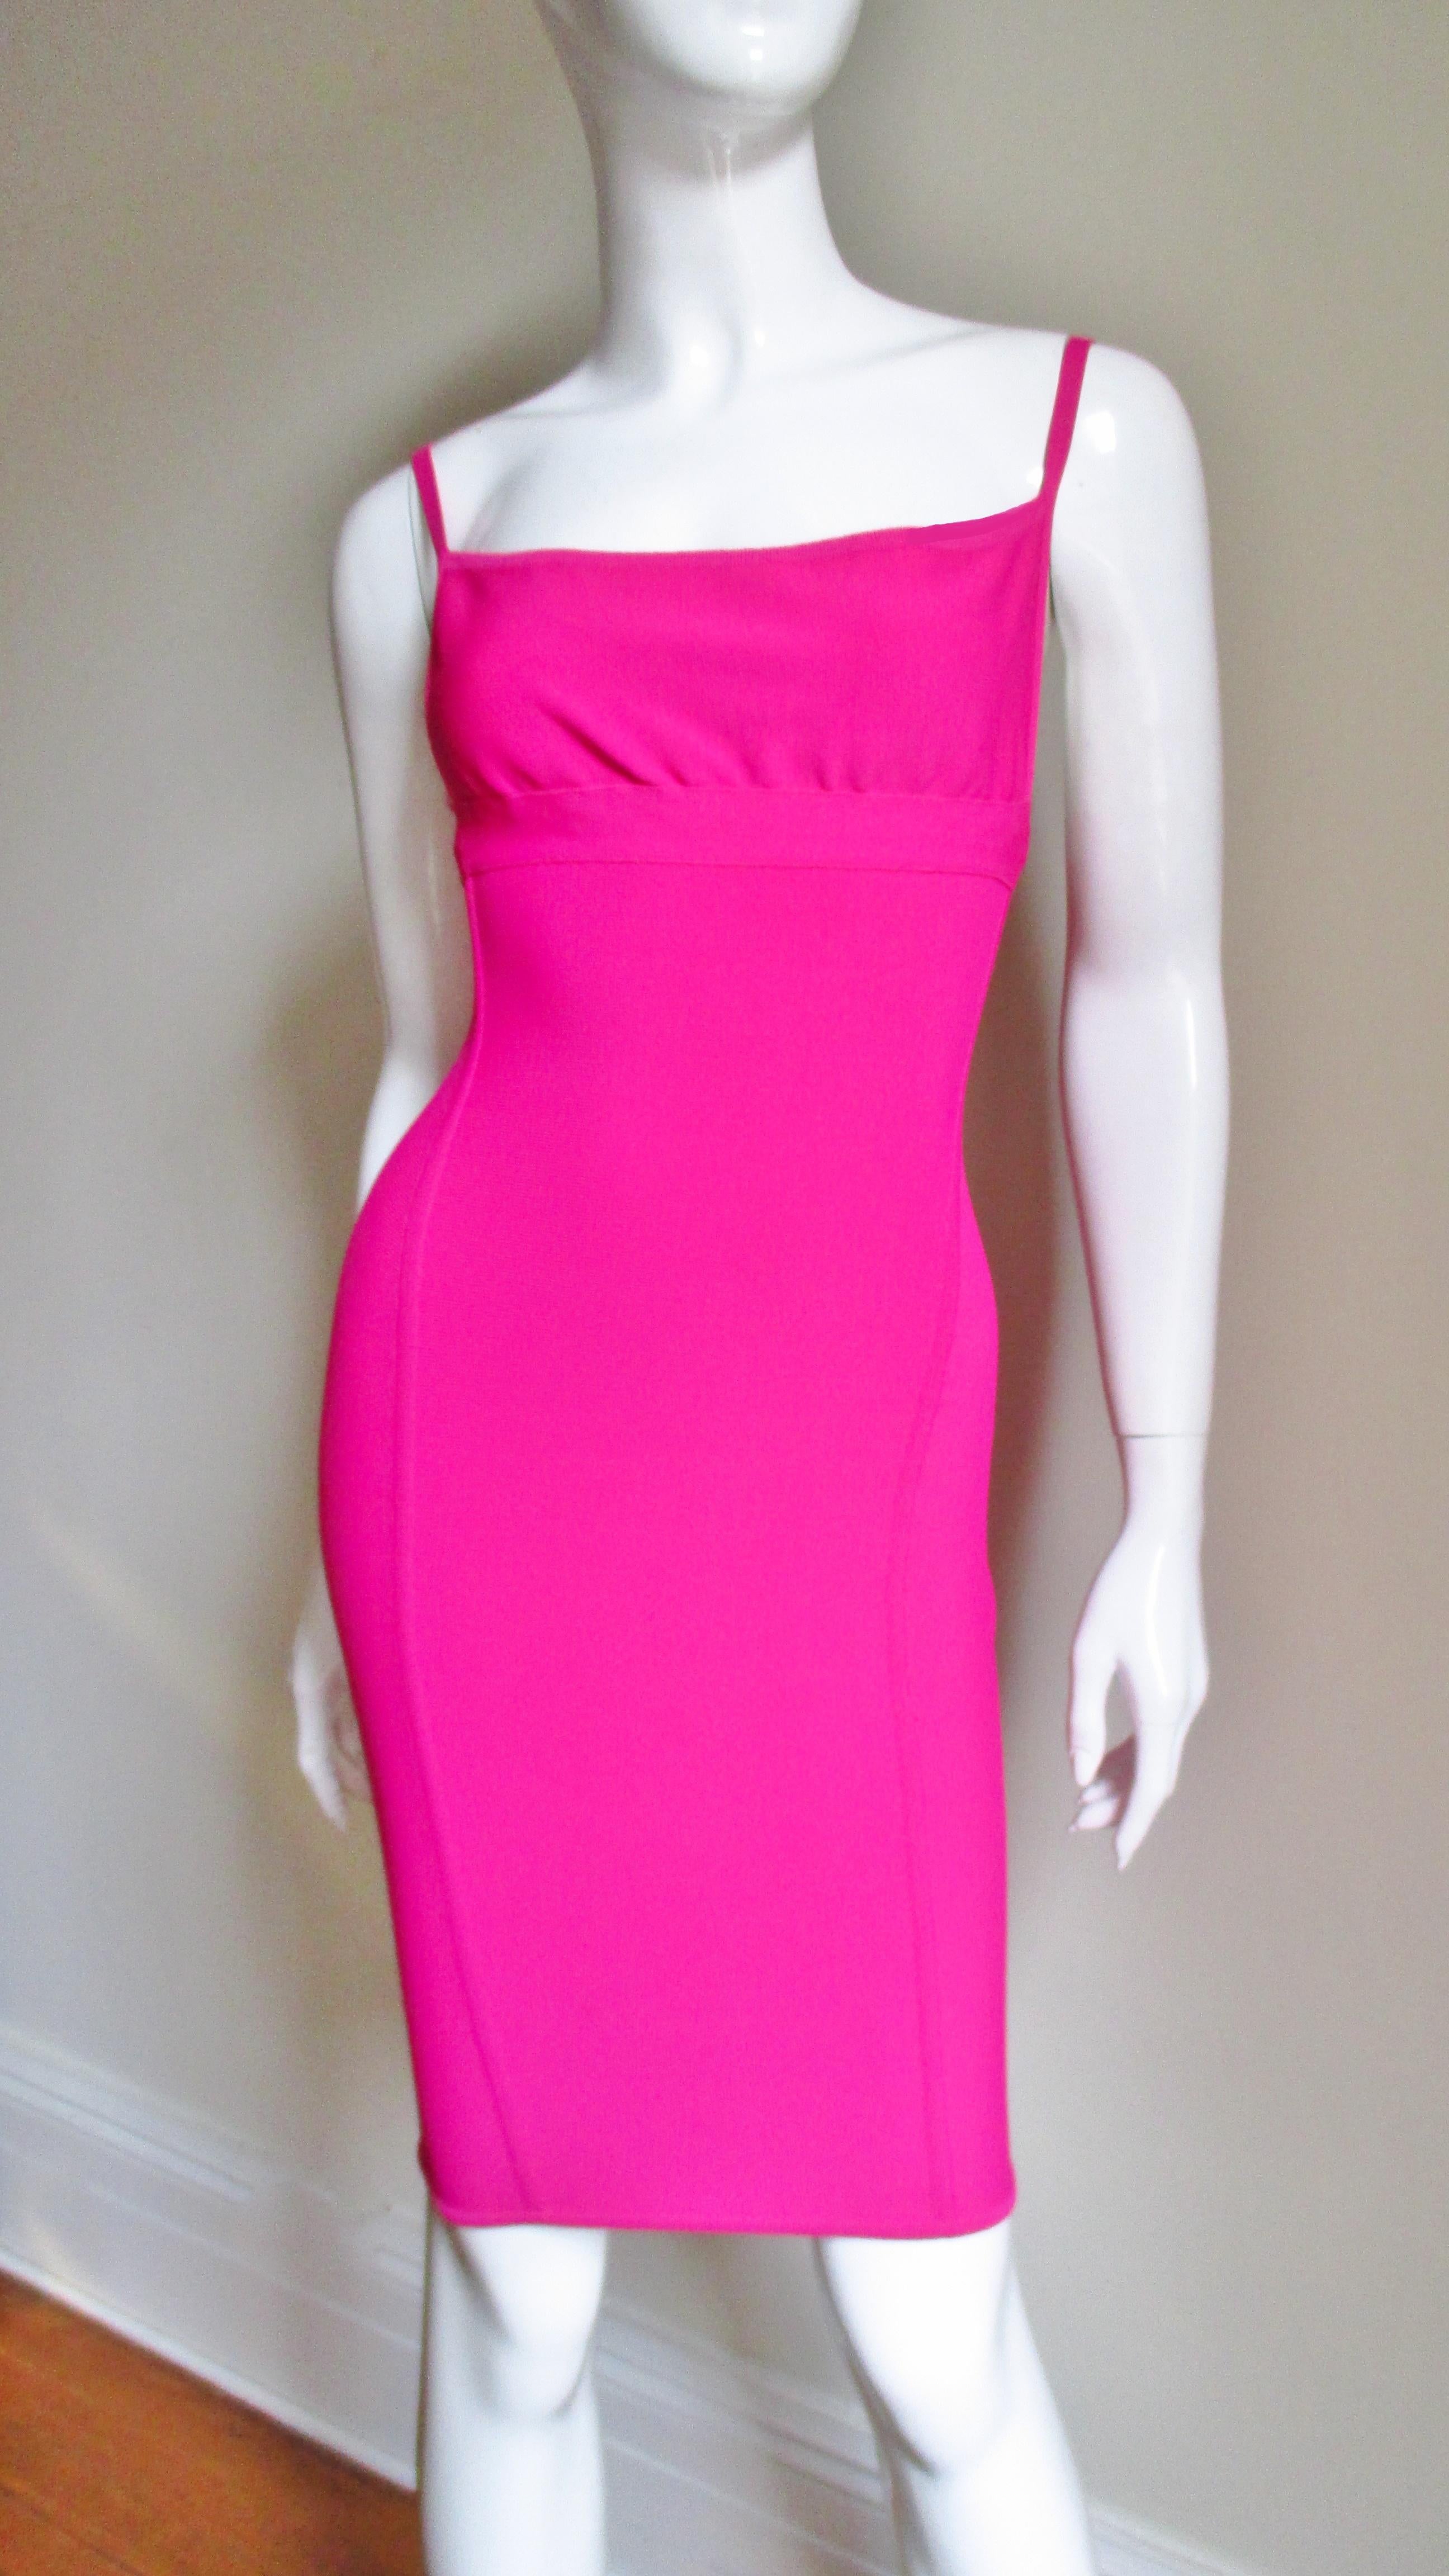 Une belle robe rose vif, consciente du corps, du maître designer Hervé Léger, dans son tissu extensible caractéristique.  La robe est dotée de bretelles spaghetti et de la coupe adaptée au corps qu'il a rendue célèbre. Il n'est pas doublé et possède